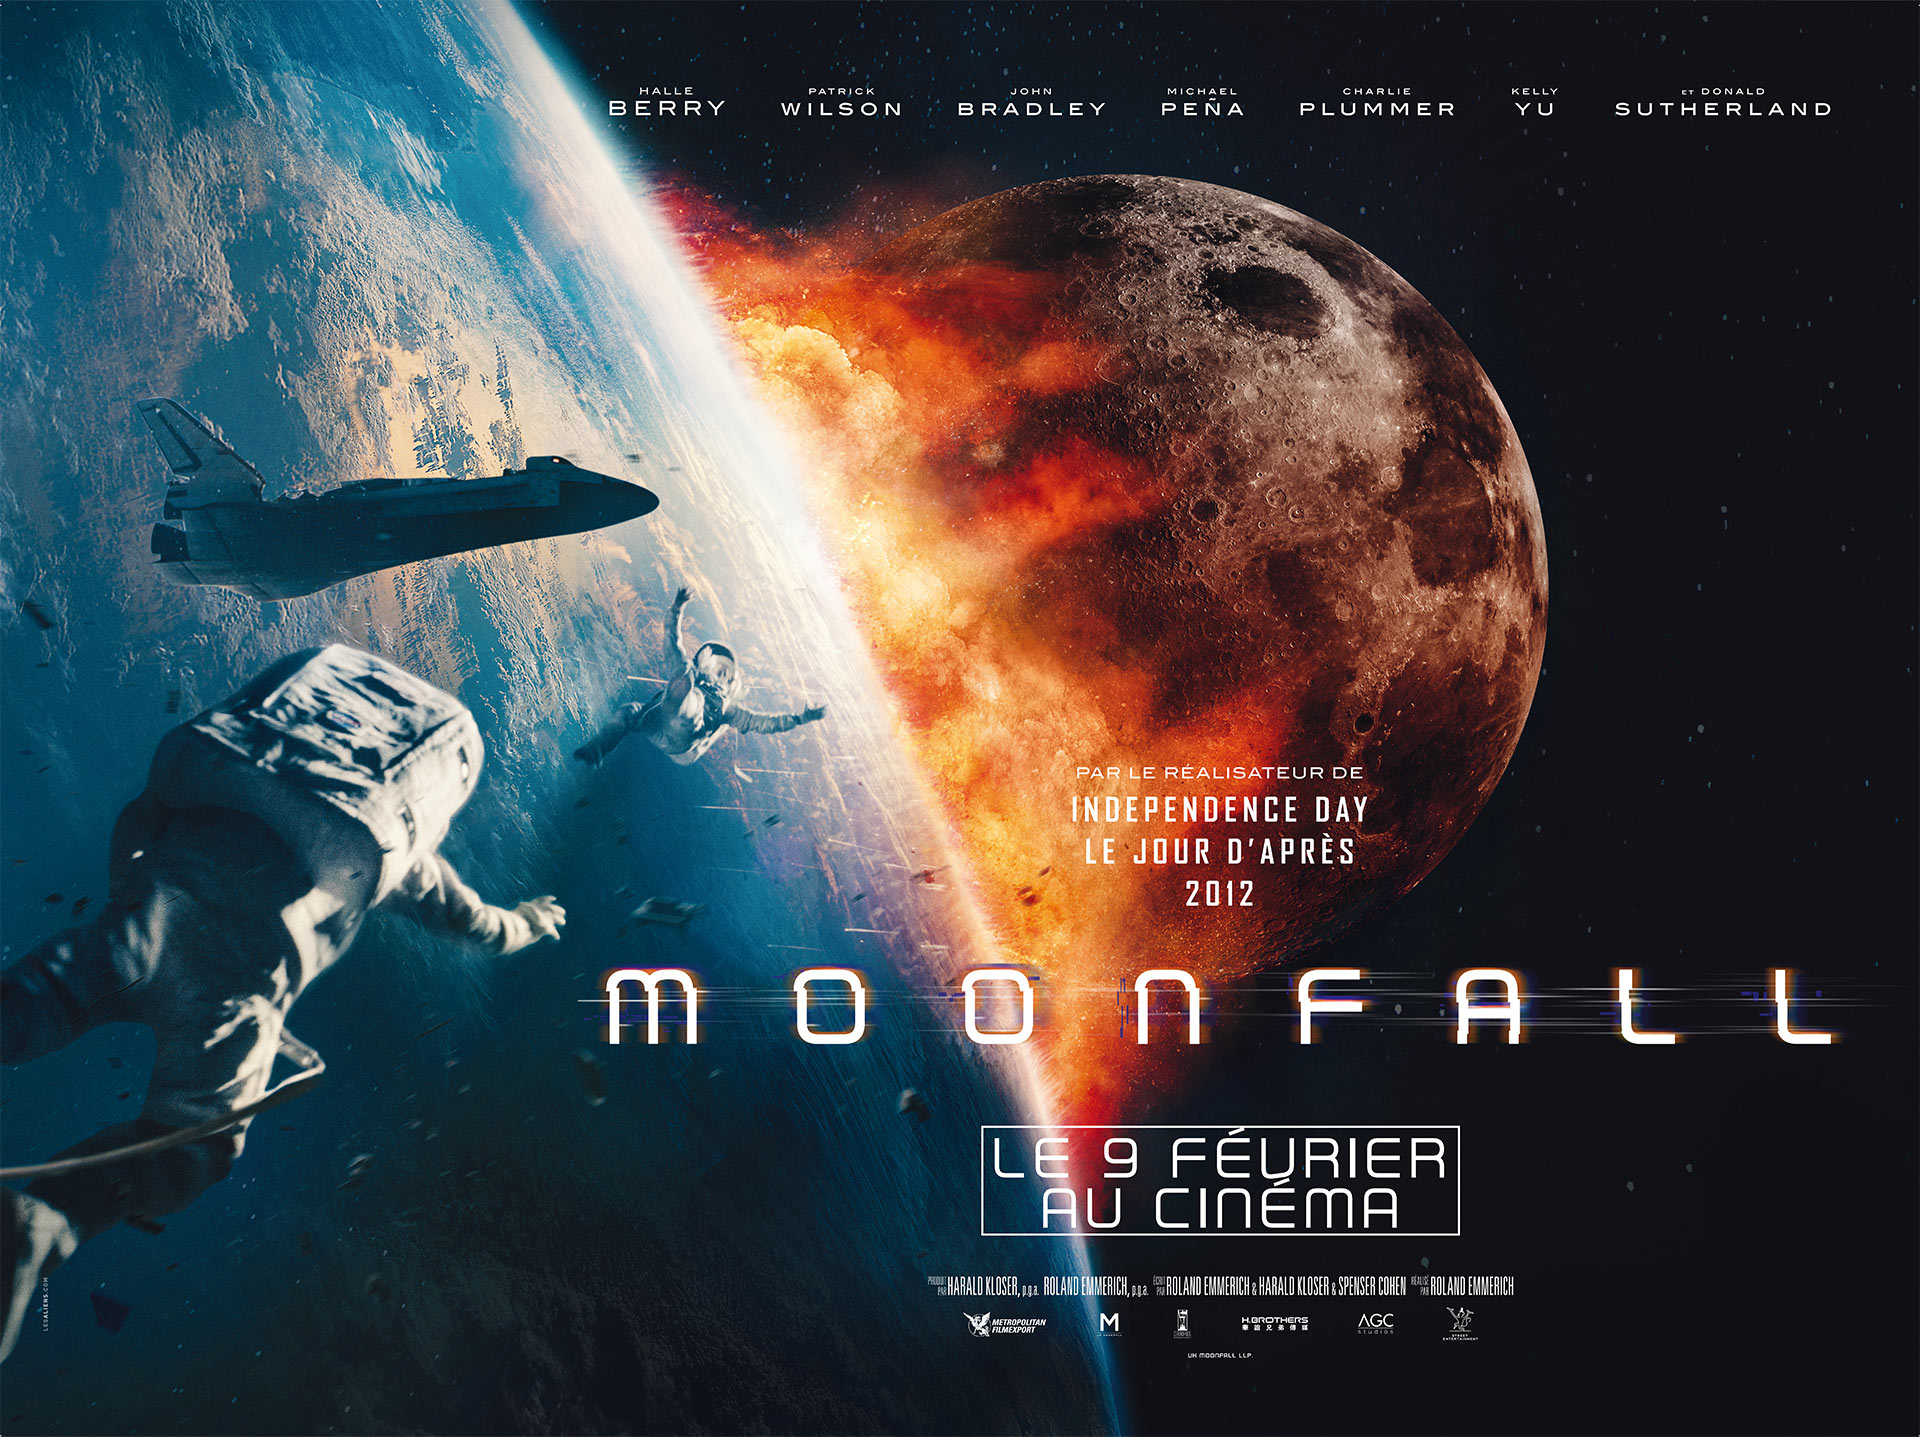 Moonfall, affiche de cinéma, film distribué par Metropolitan Filmexport - Affiche française créée par l'agence Les Aliens - Format préventif 4X3